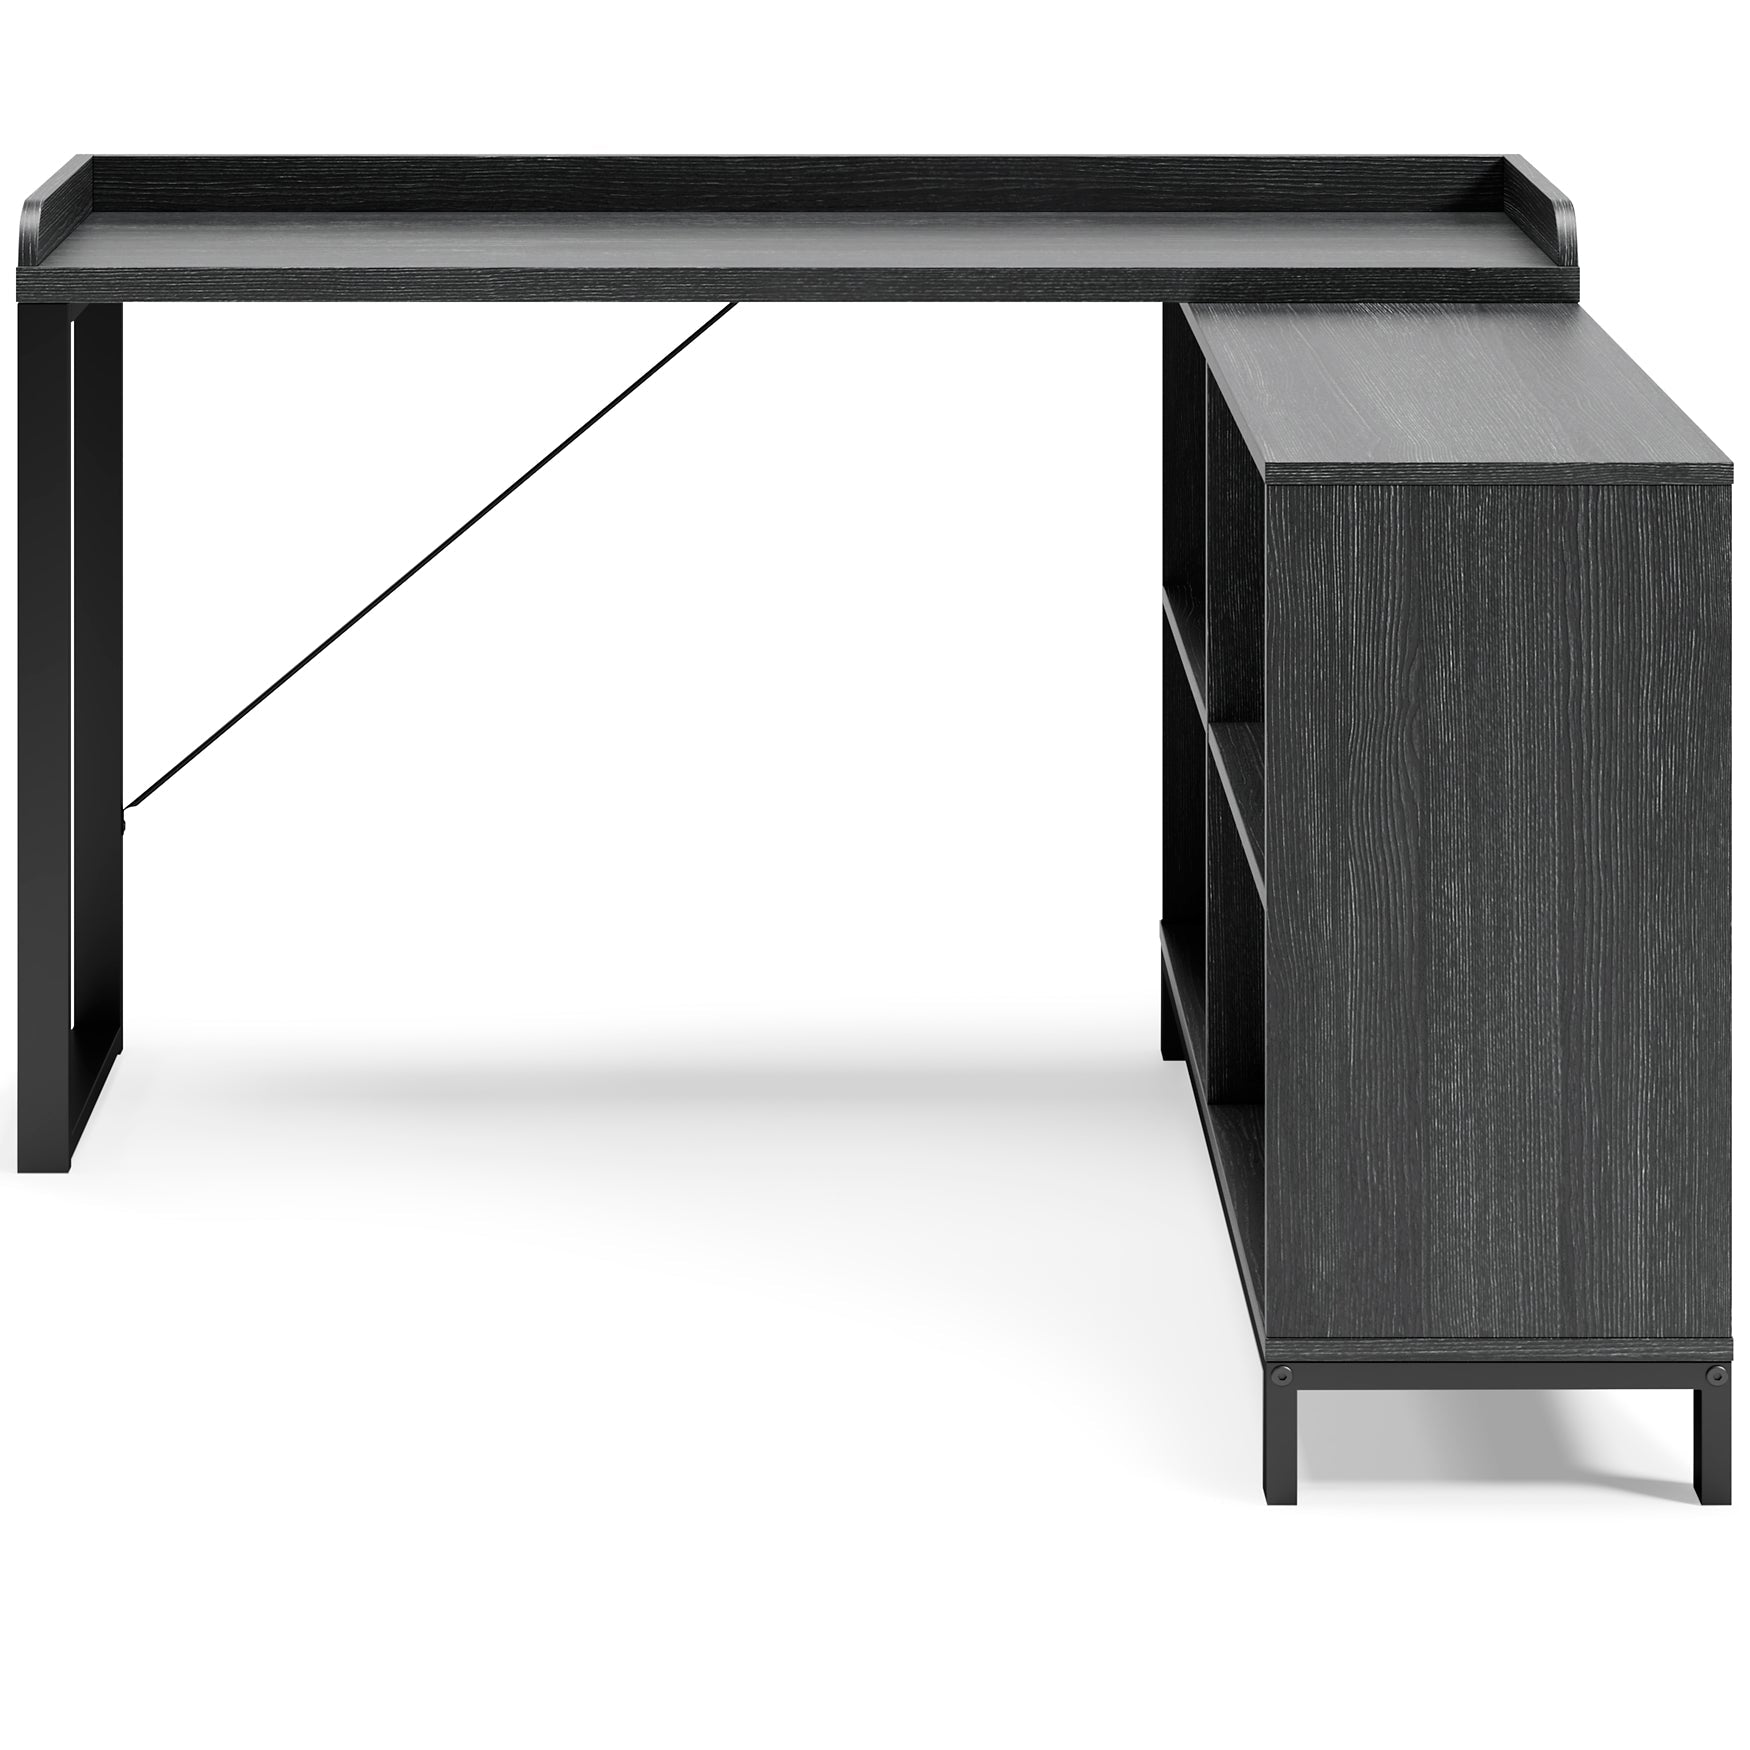 Yarlow L-Desk Smyrna Furniture Outlet